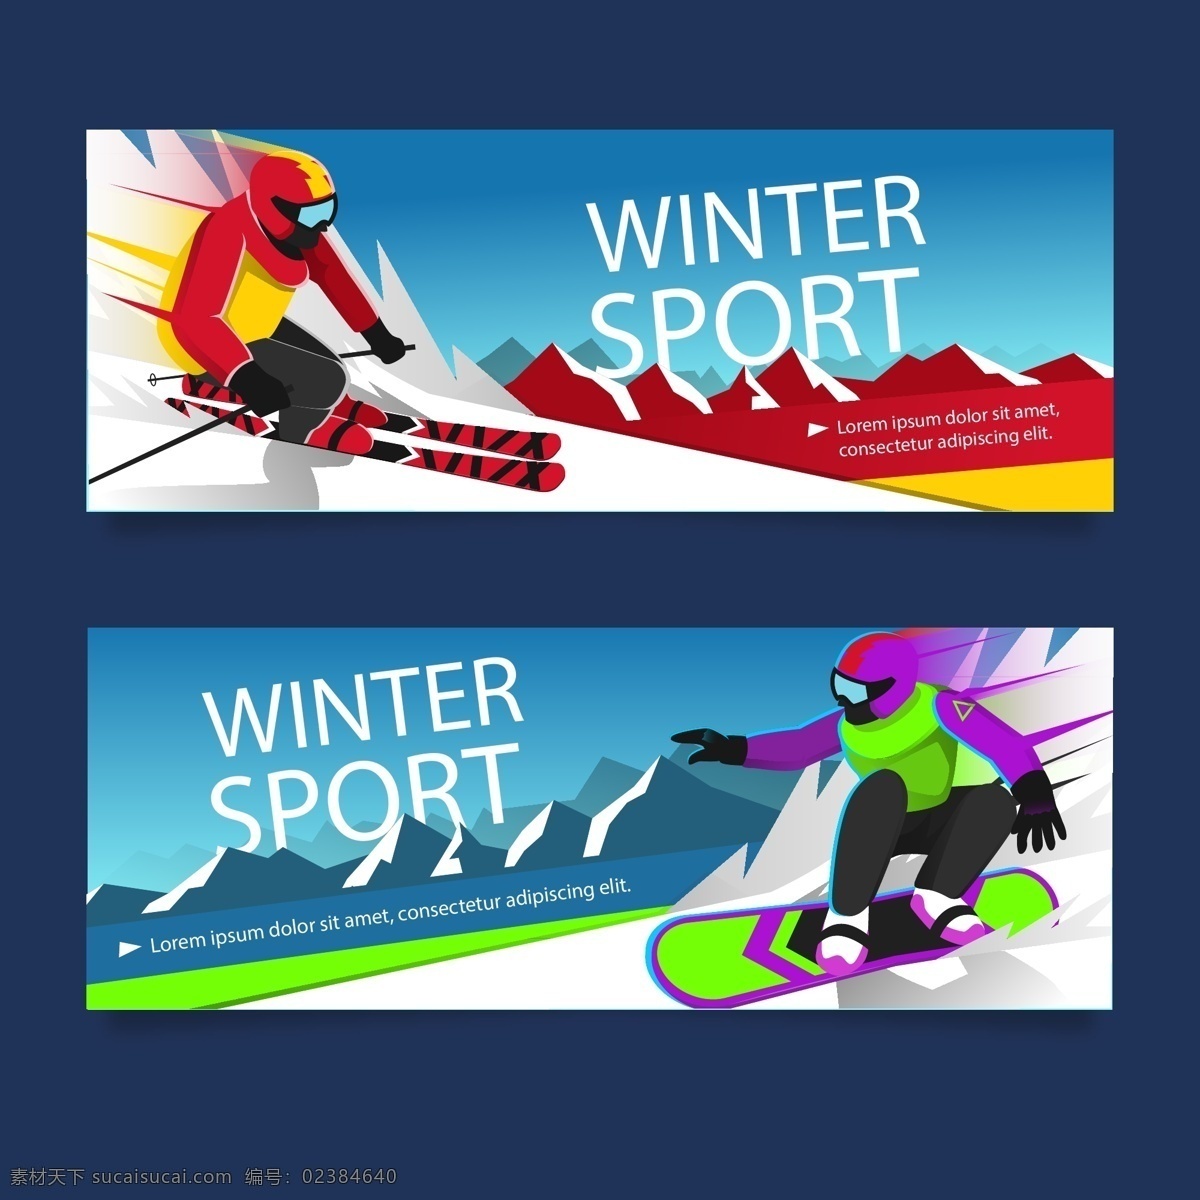 滑雪 运动 体育运动 奥运会 比赛 运动海报 运动比赛海报 运动员 户外运动 室内运动 运动俱乐部 卡通设计